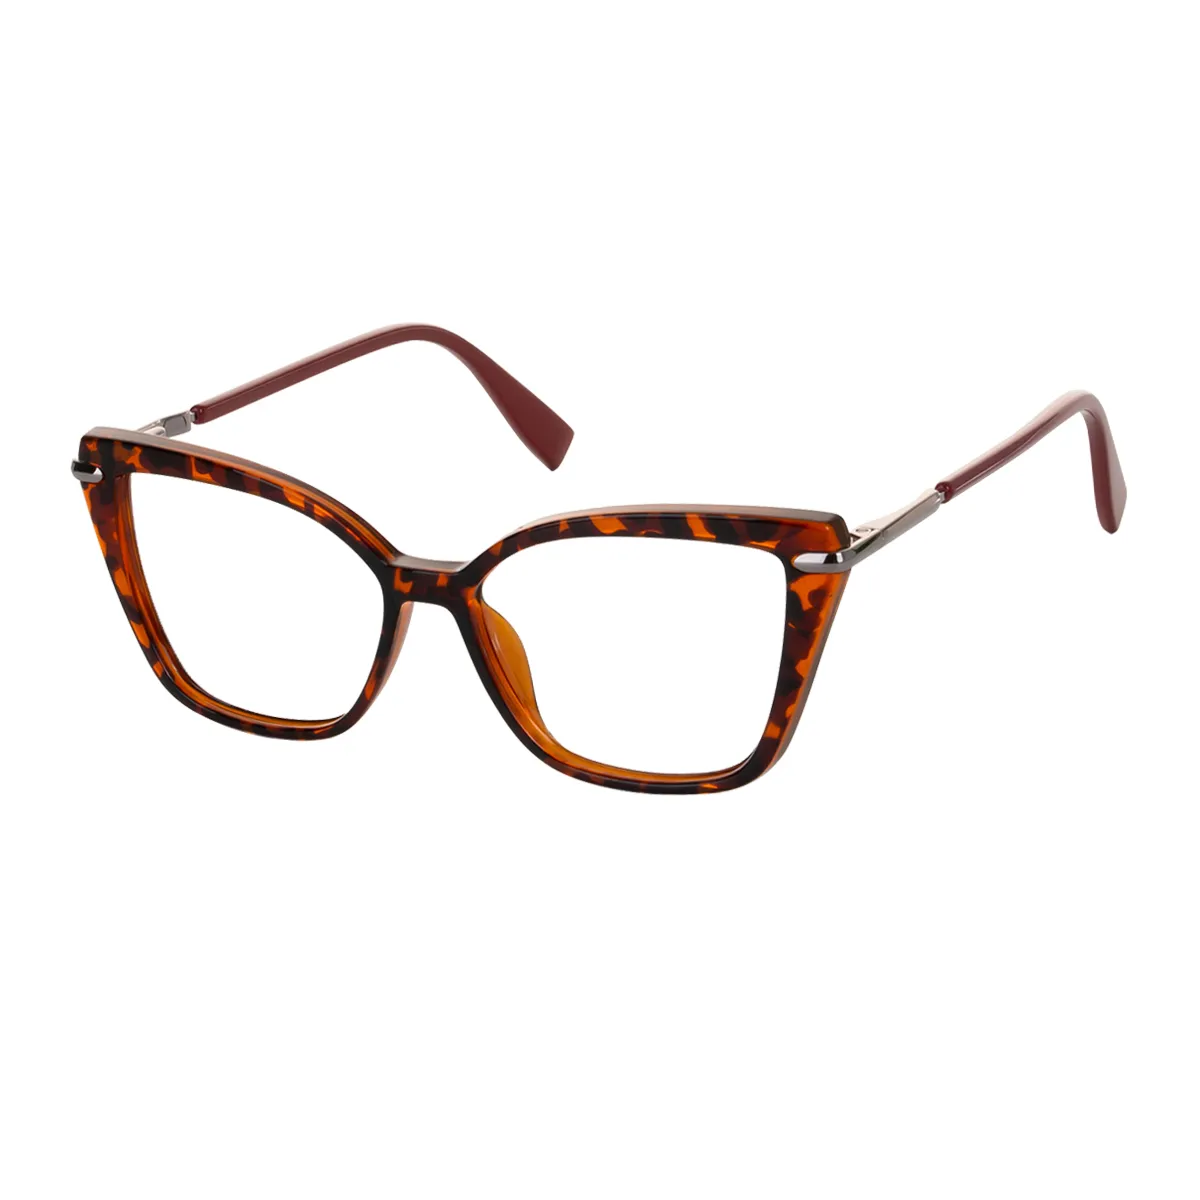 Chat - Cat-eye Tortoiseshell Glasses for Women - EFE